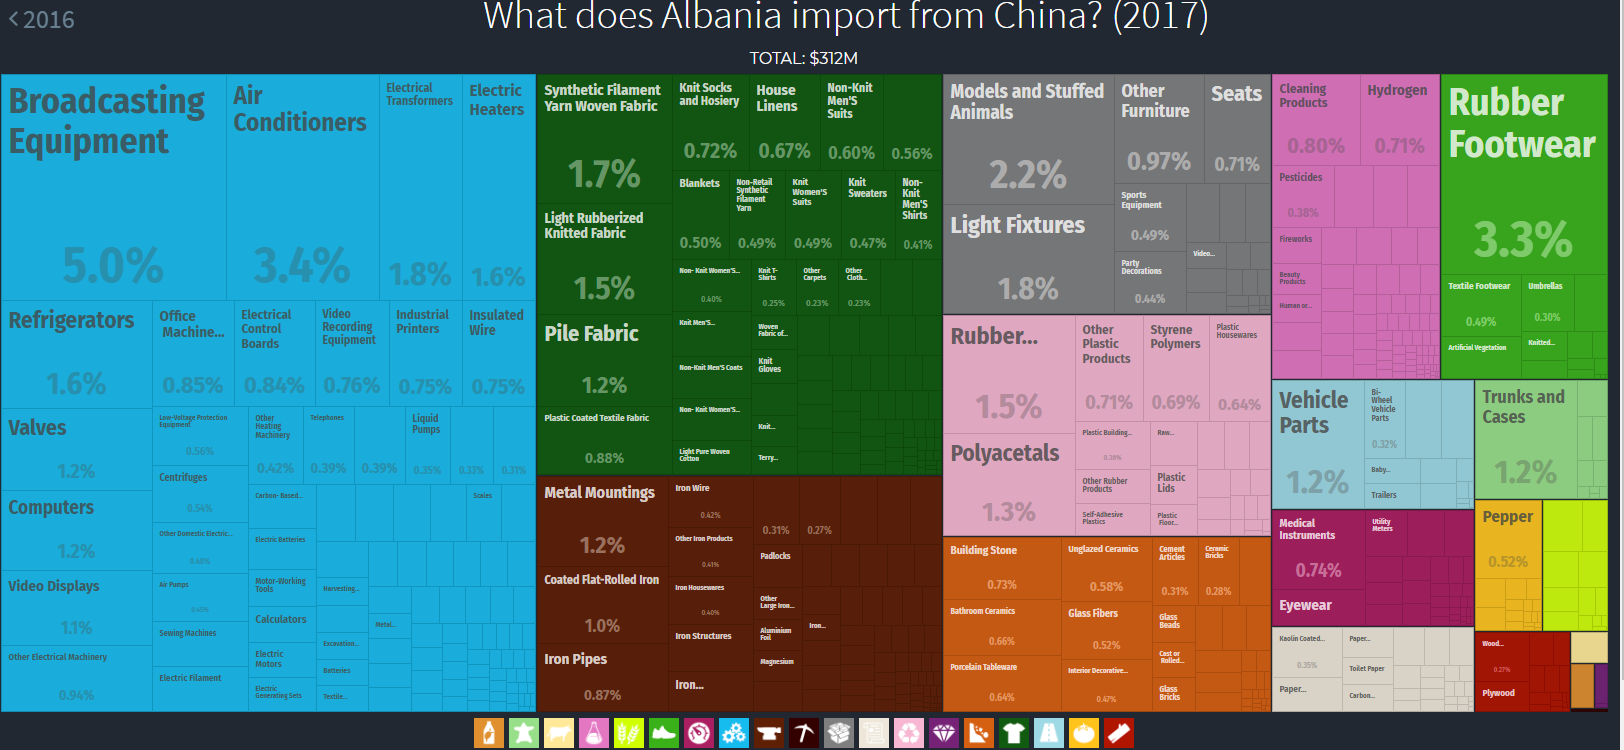 Albania imports from China